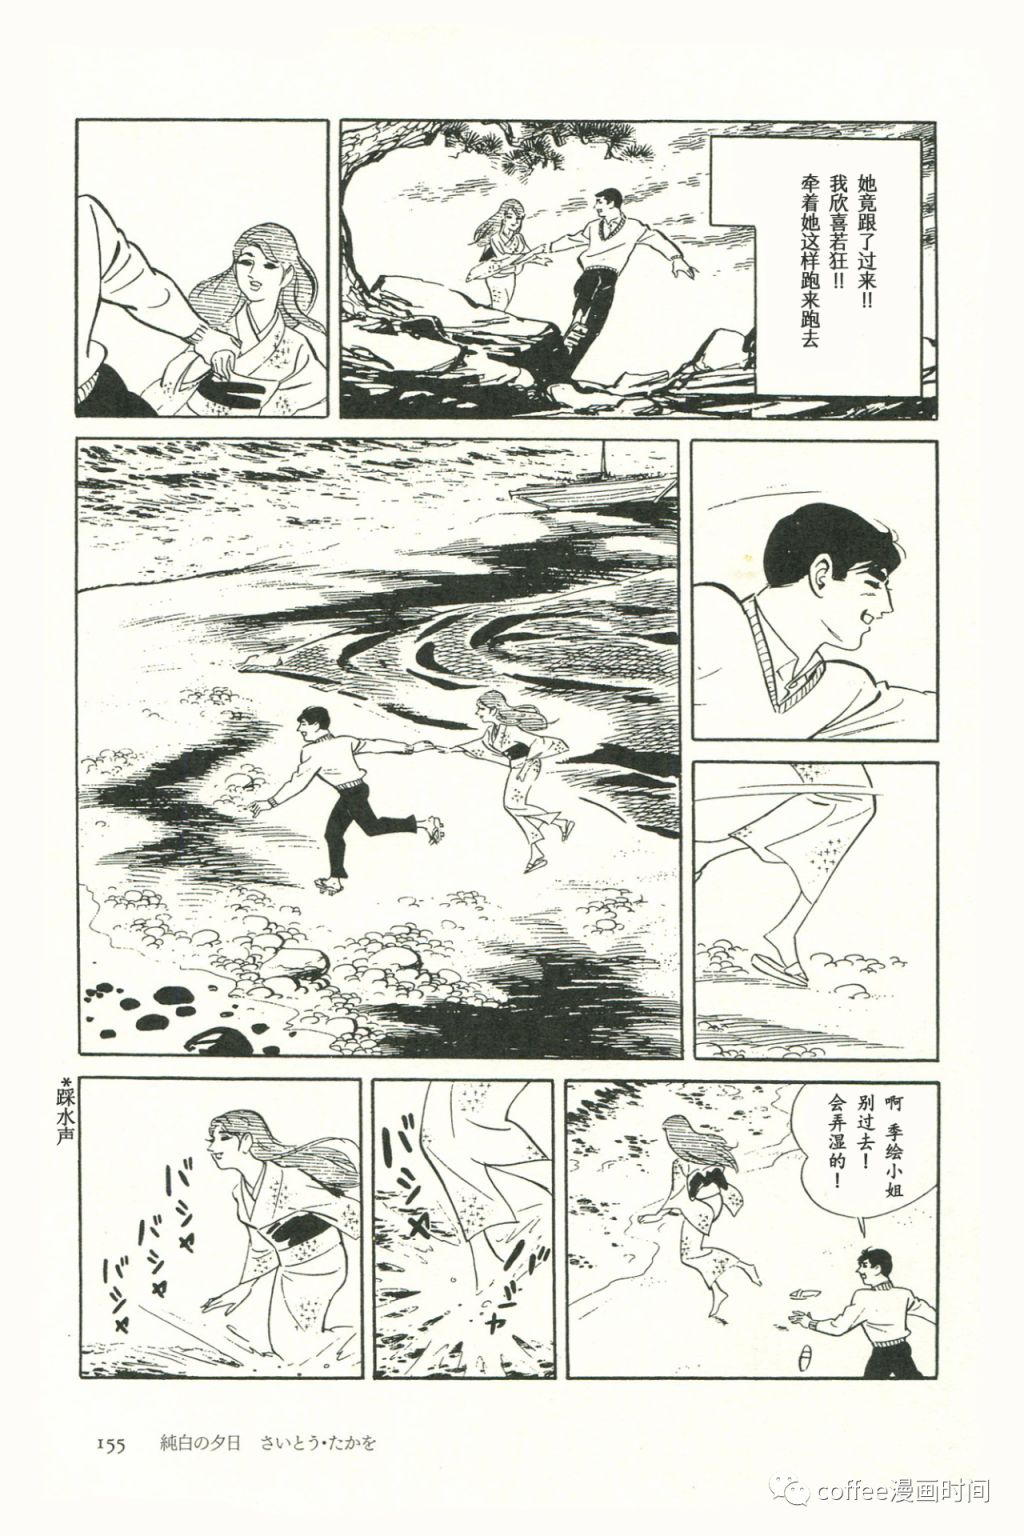 日本短篇漫畫傑作集 - 齋藤隆夫《純白的夕陽》 - 4